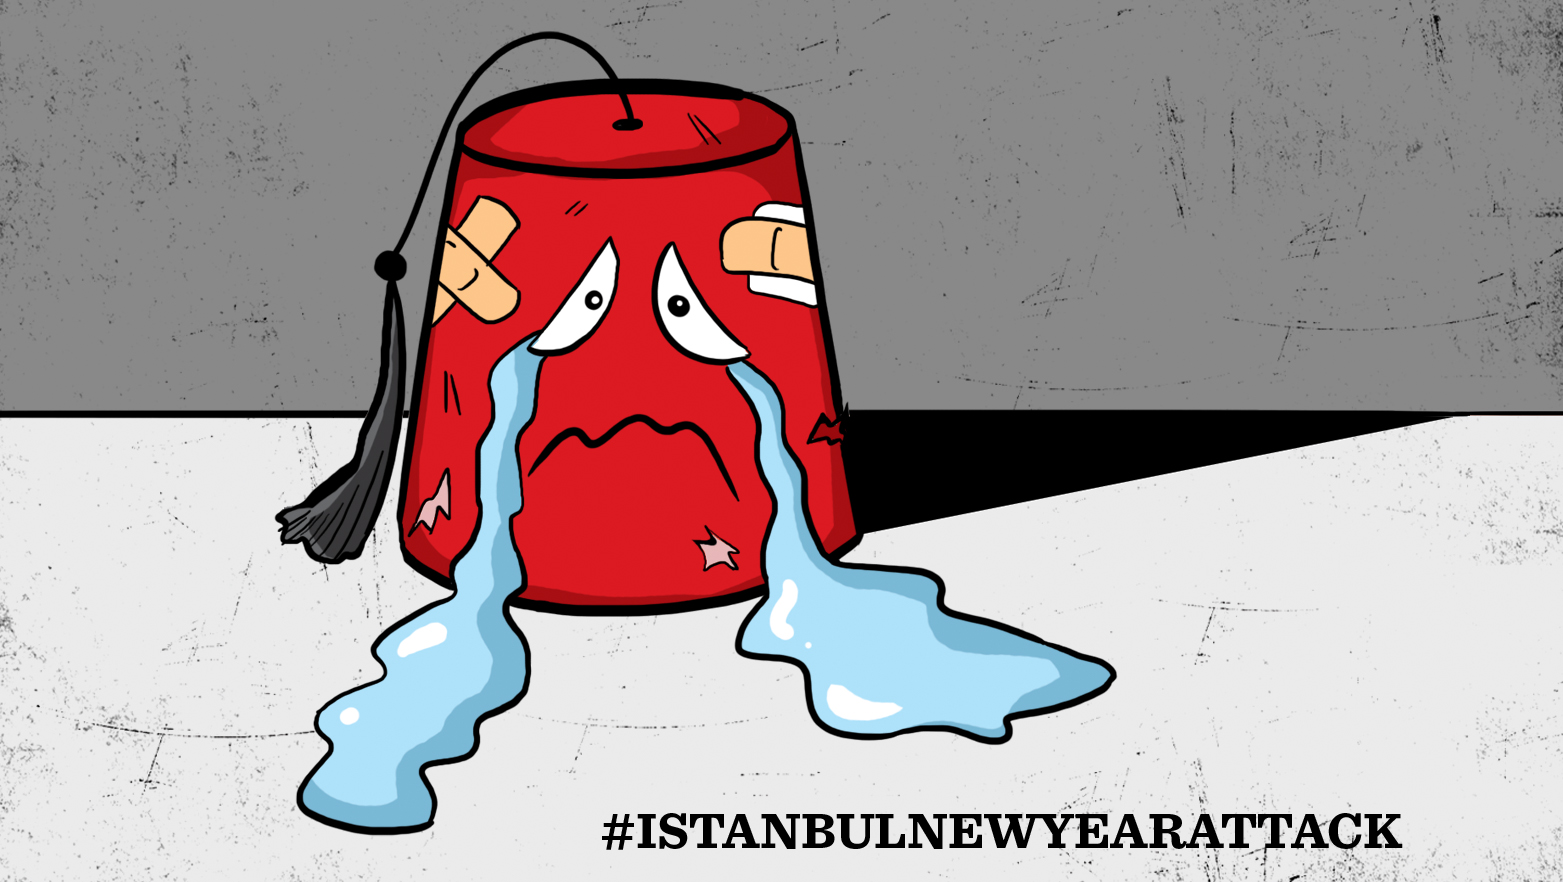 伊斯坦布尔新年攻击